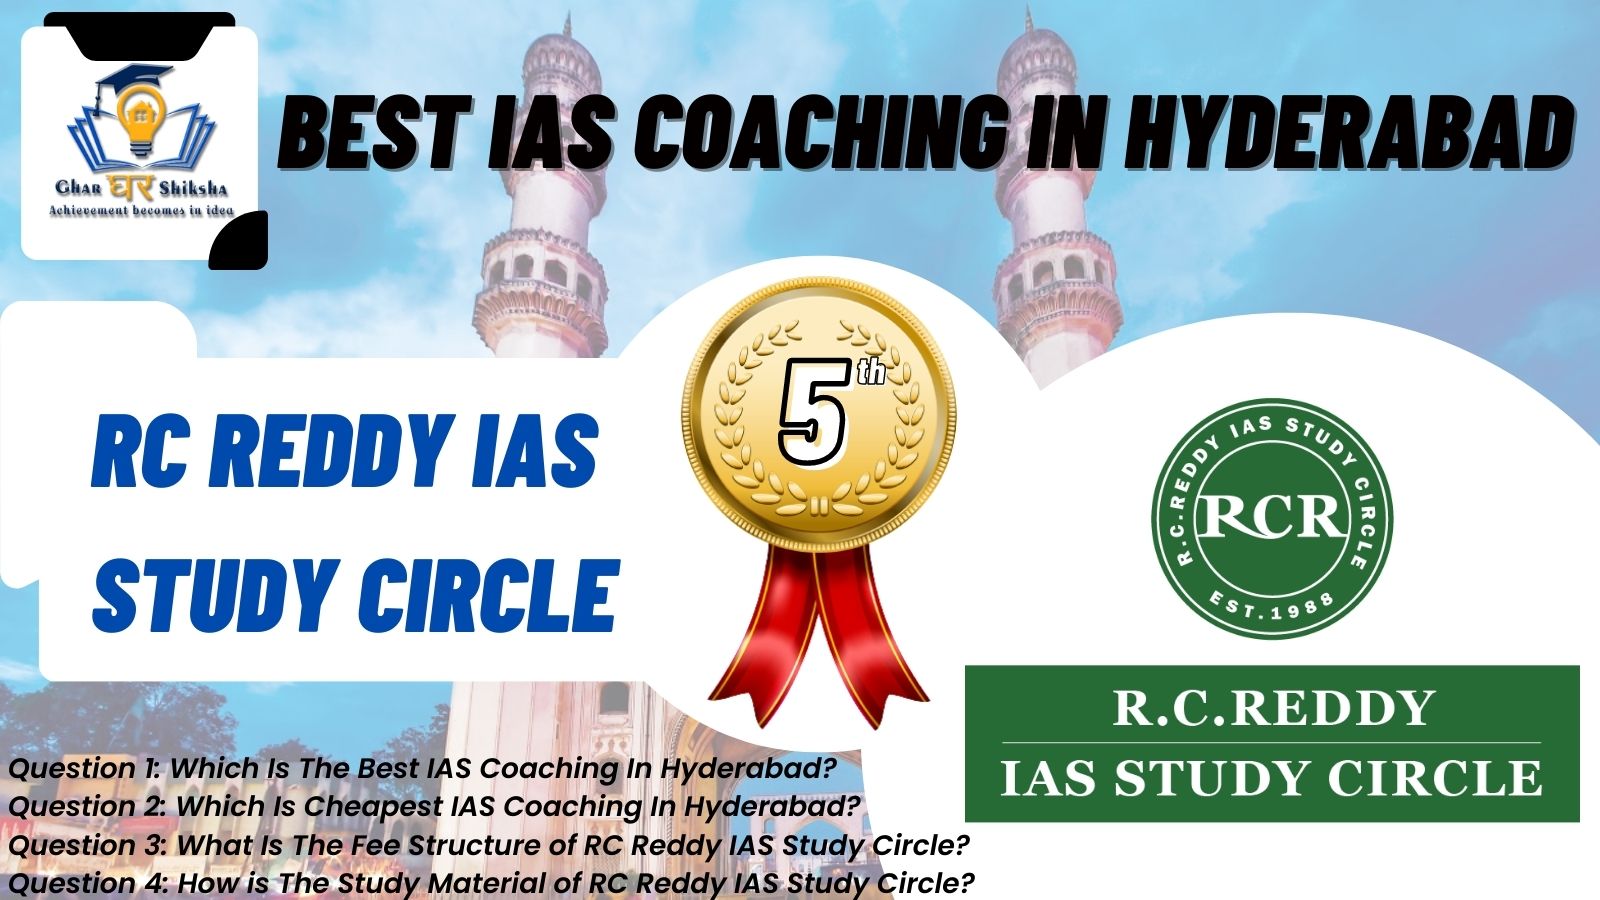 Top IAS Coaching Institute of Hyderabad